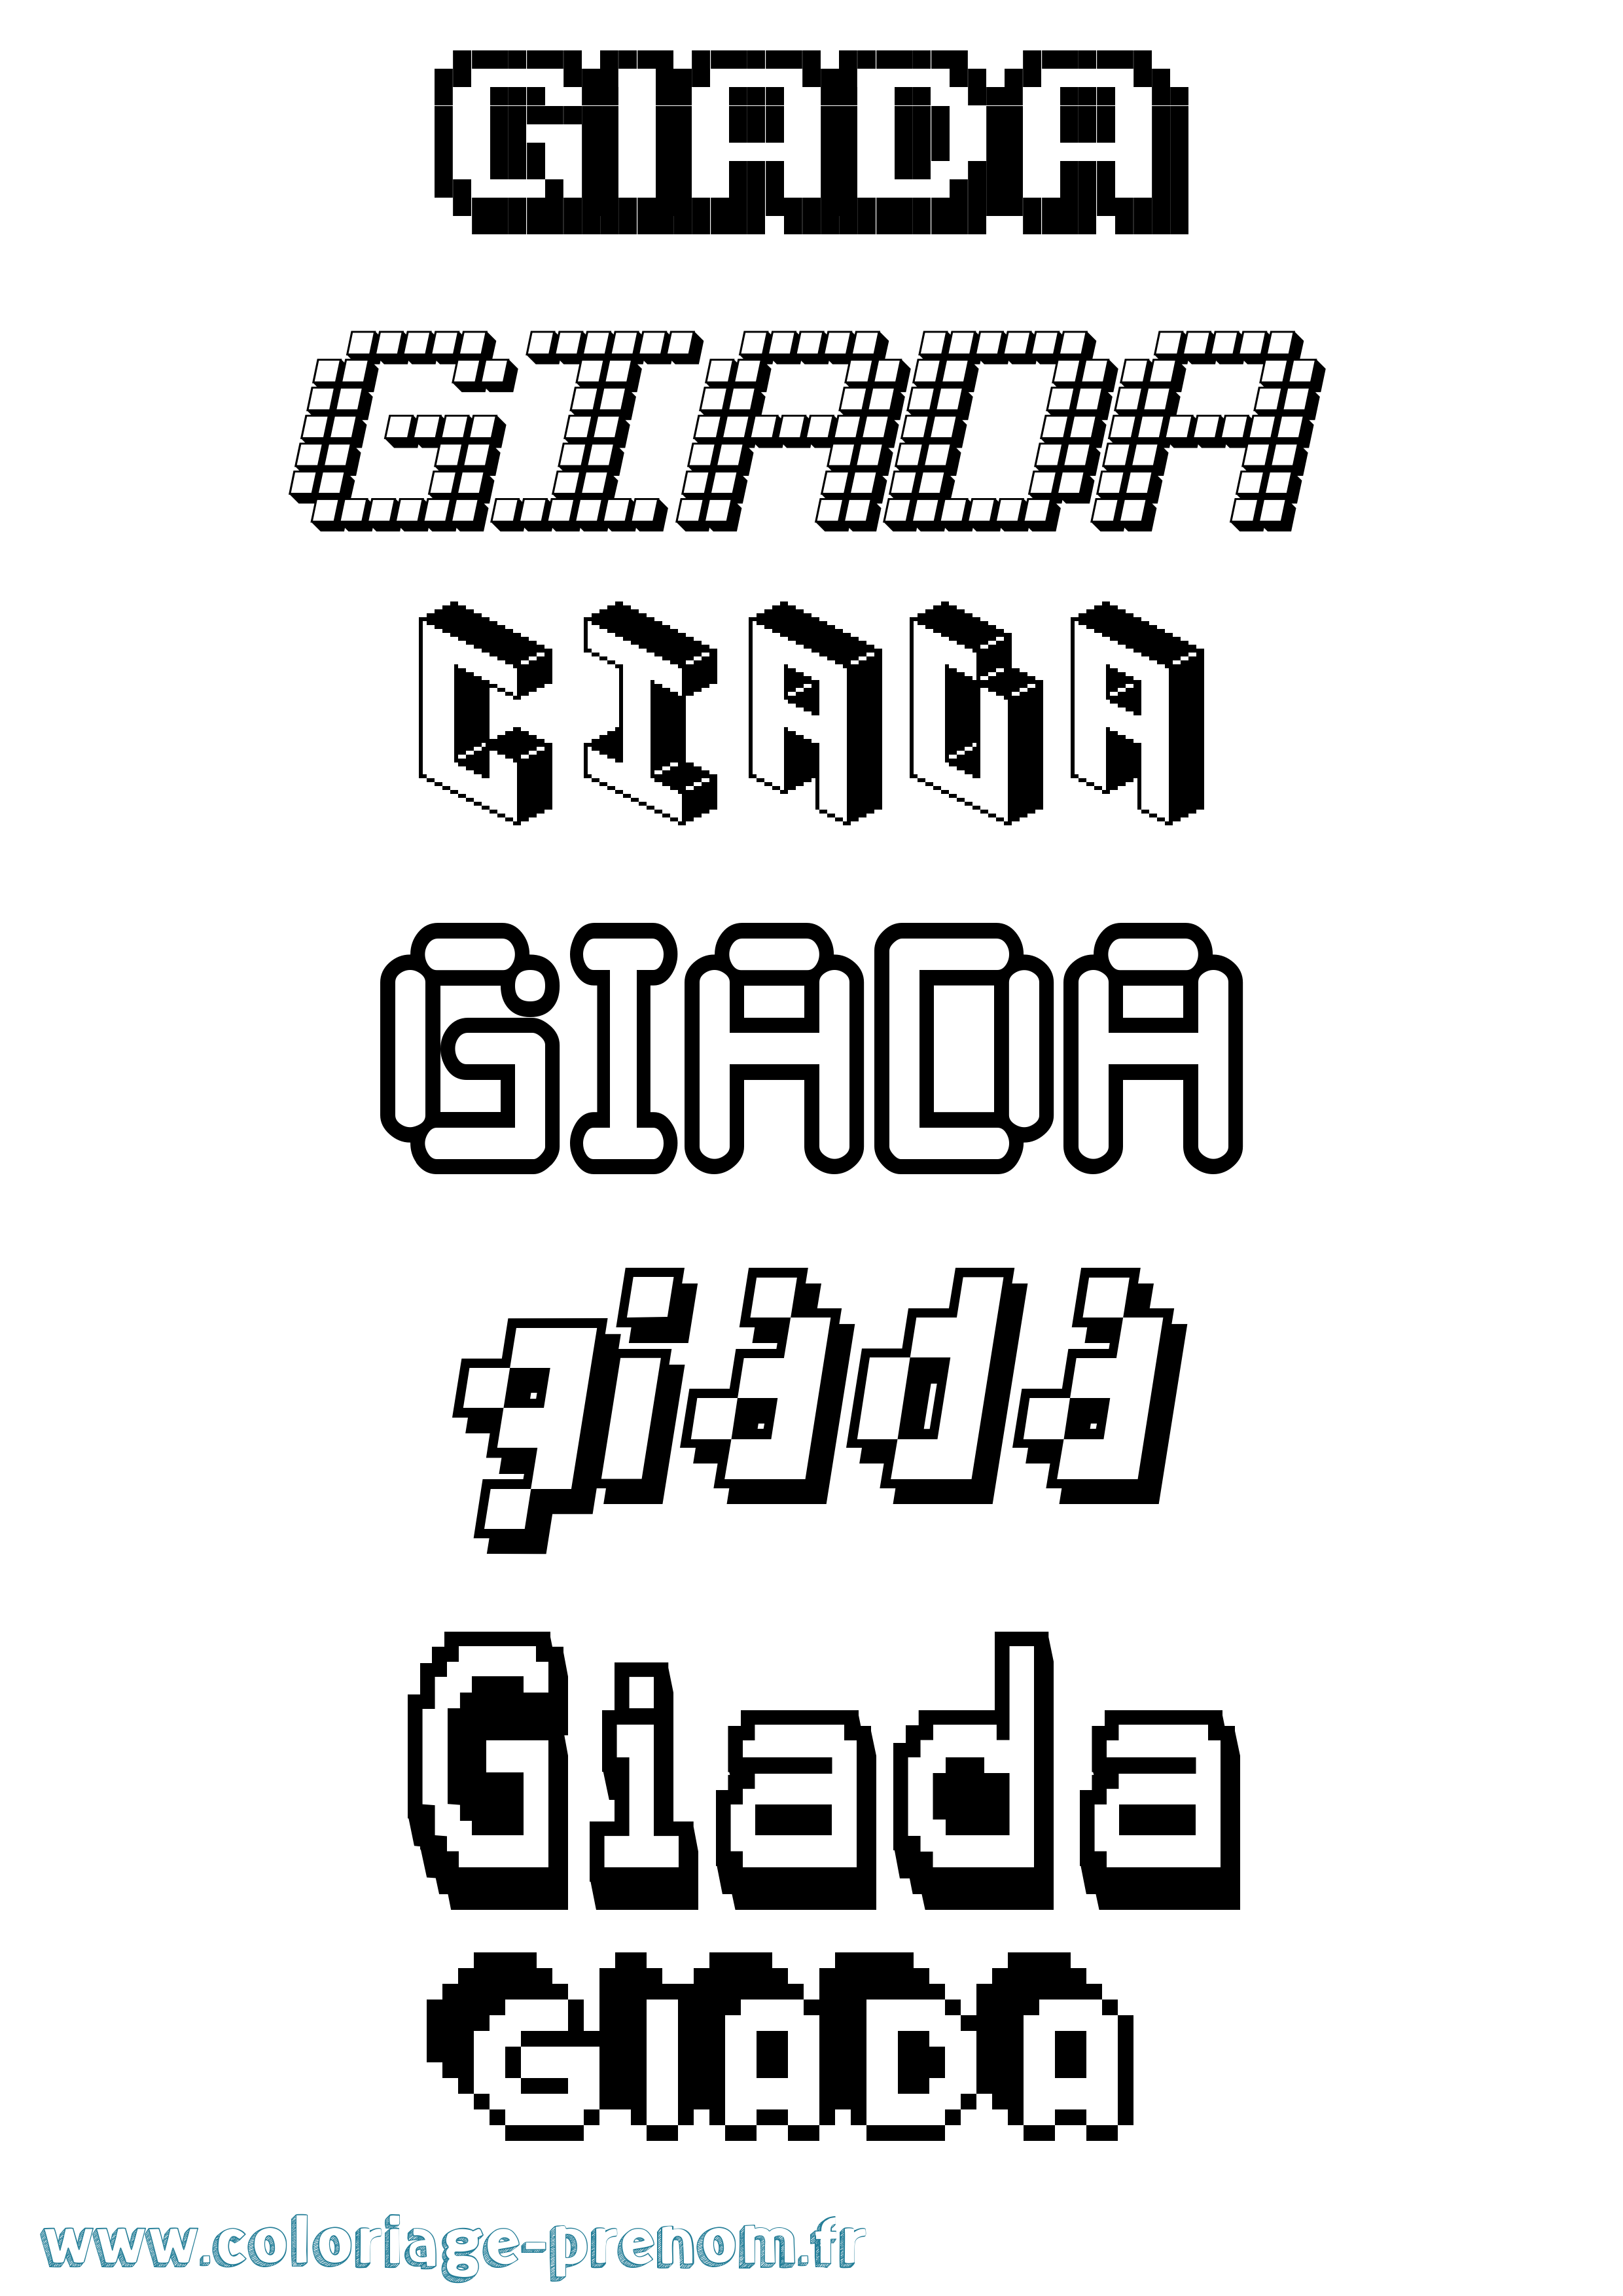 Coloriage prénom Giada Pixel